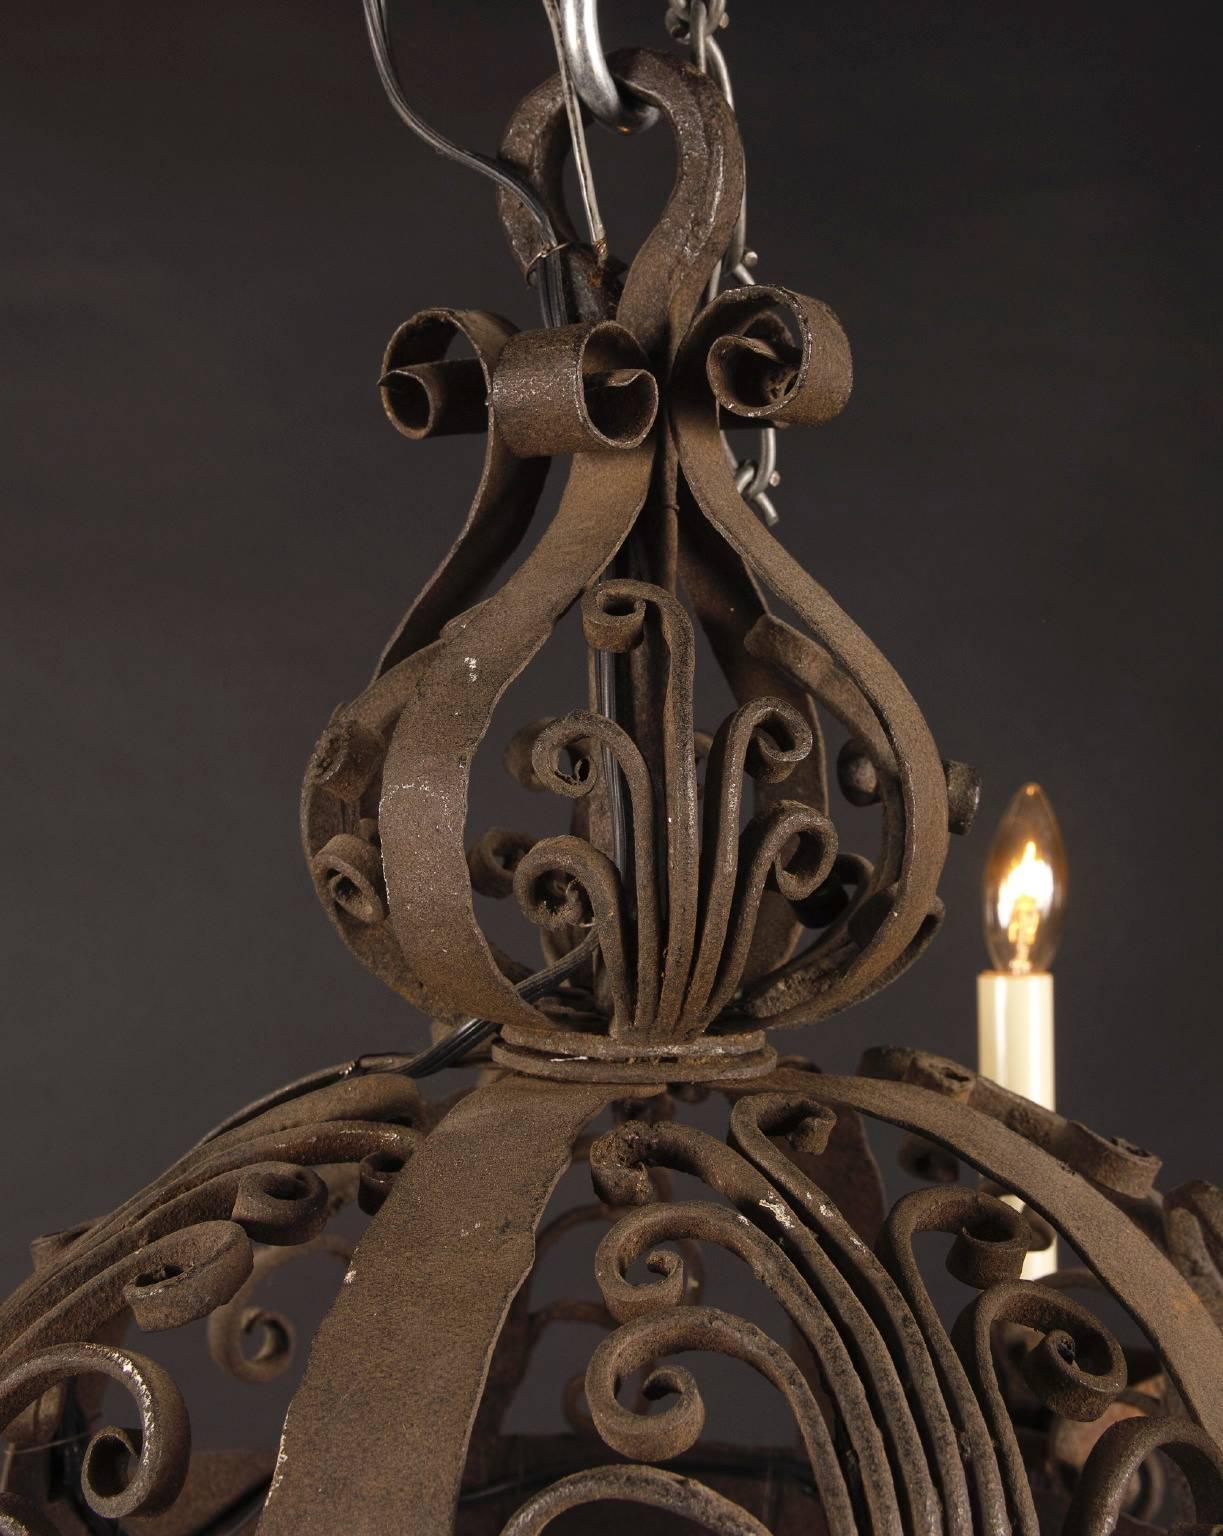 Dieser kleine kugelförmige Kronleuchter aus dem 18. Jahrhundert ist aus handgeschmiedetem Eisen um 1780 gefertigt. Das antike französische Stück ist mit eisernen Bobeches und einer floralen Verzierung an der Oberseite versehen, mit einem floralen